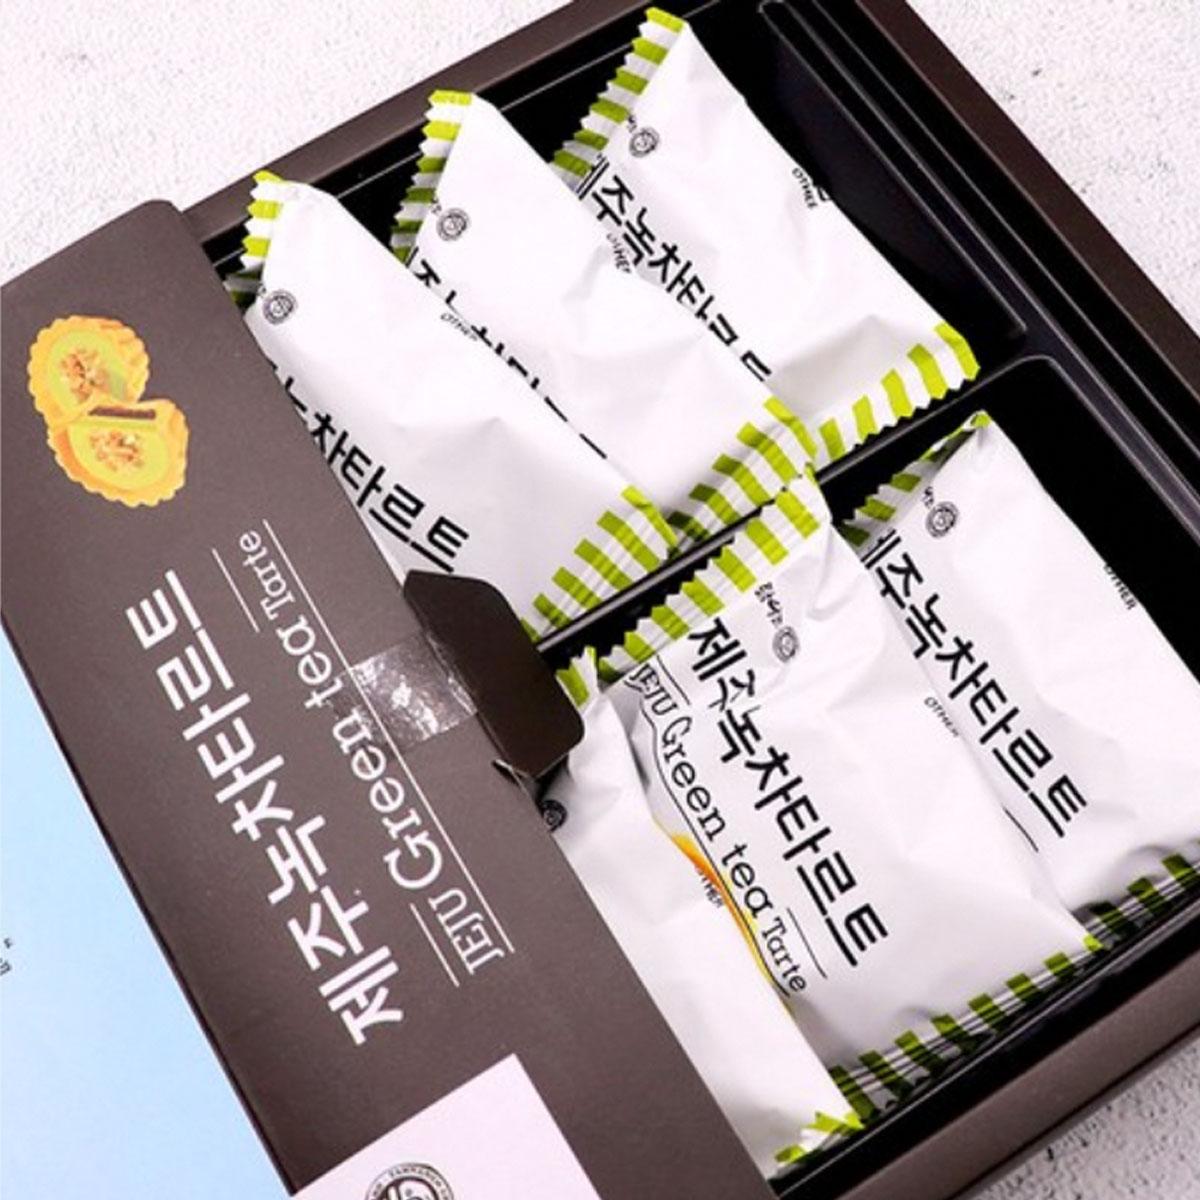 Jeju Green Tea Tart (10 packs)